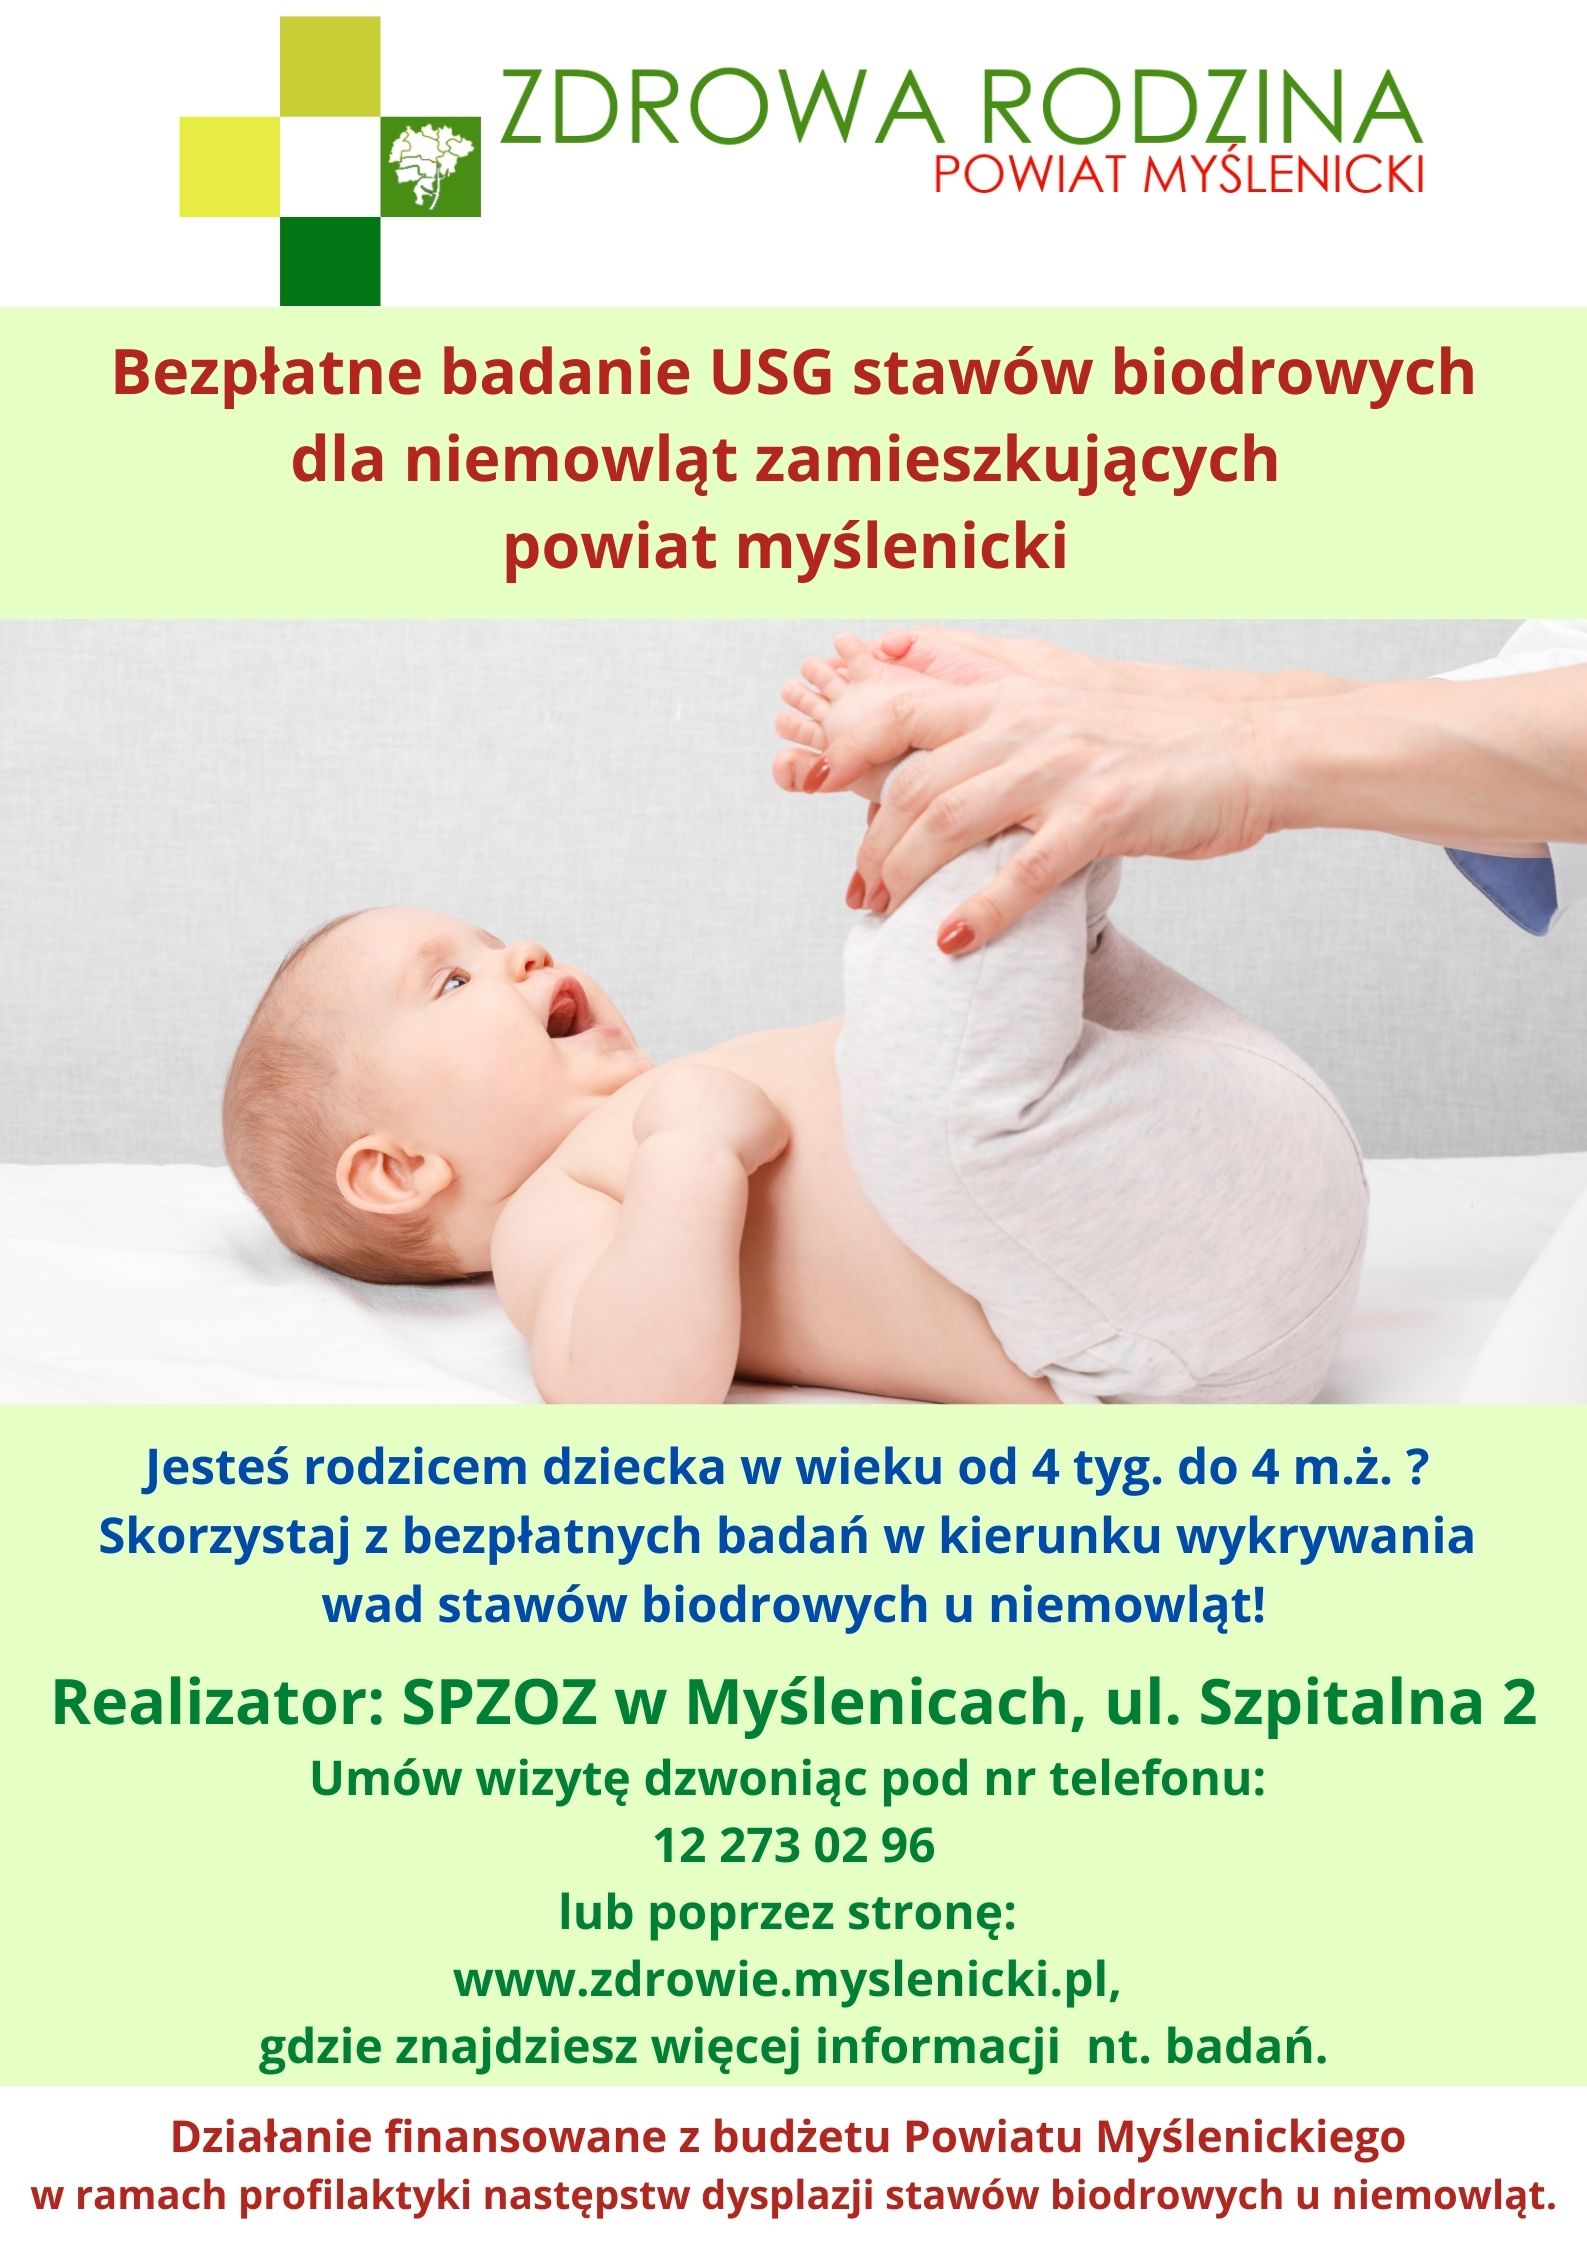 Plakat informujący o bezpłatnym badaniu USG stawów biodrowych dla niemowląd zamieszkujących powiat myślenicki